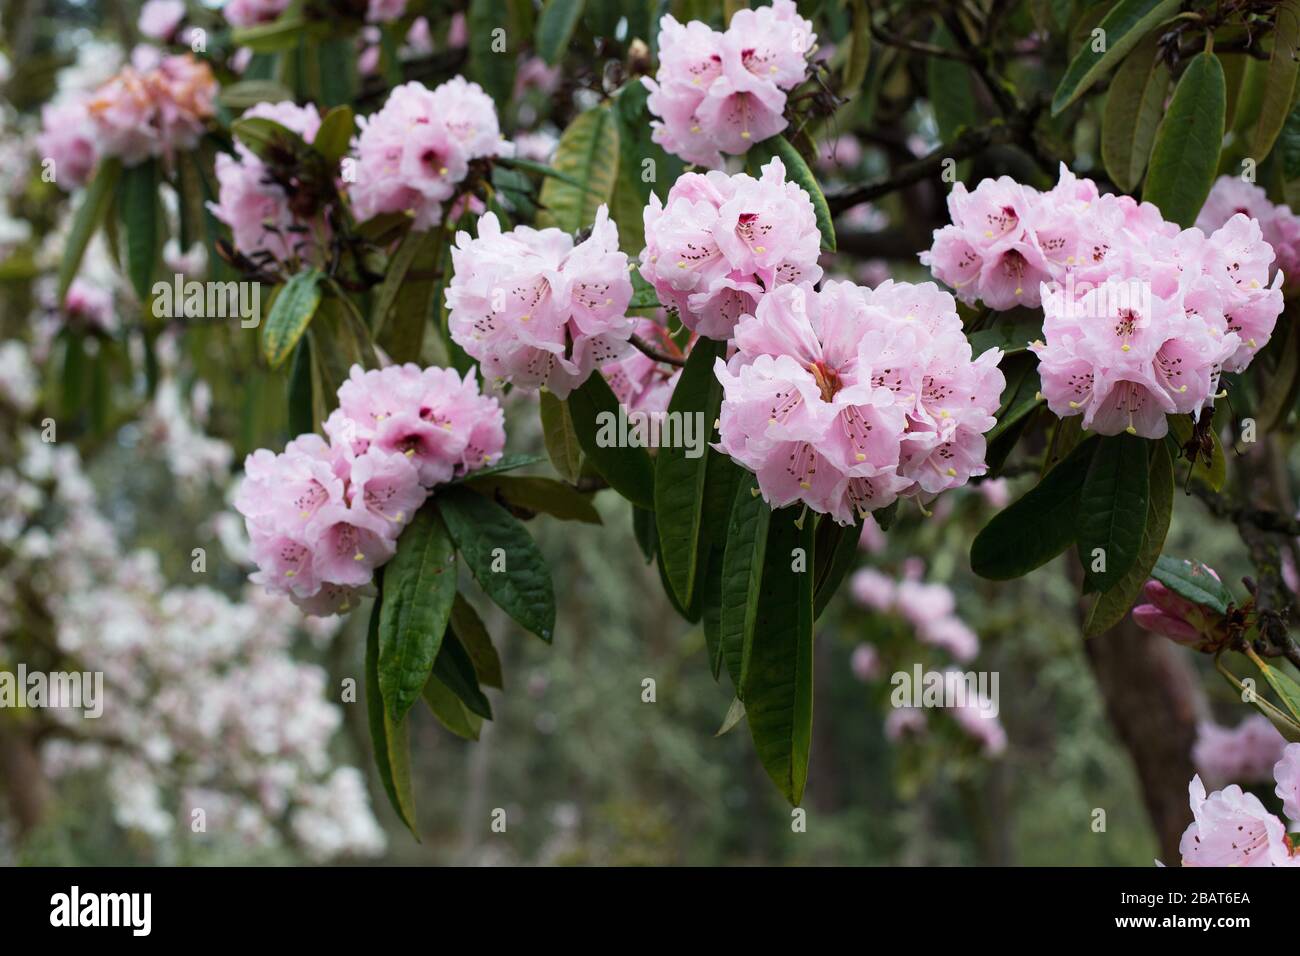 Rhododendron arboreum var. roseum. Stock Photo